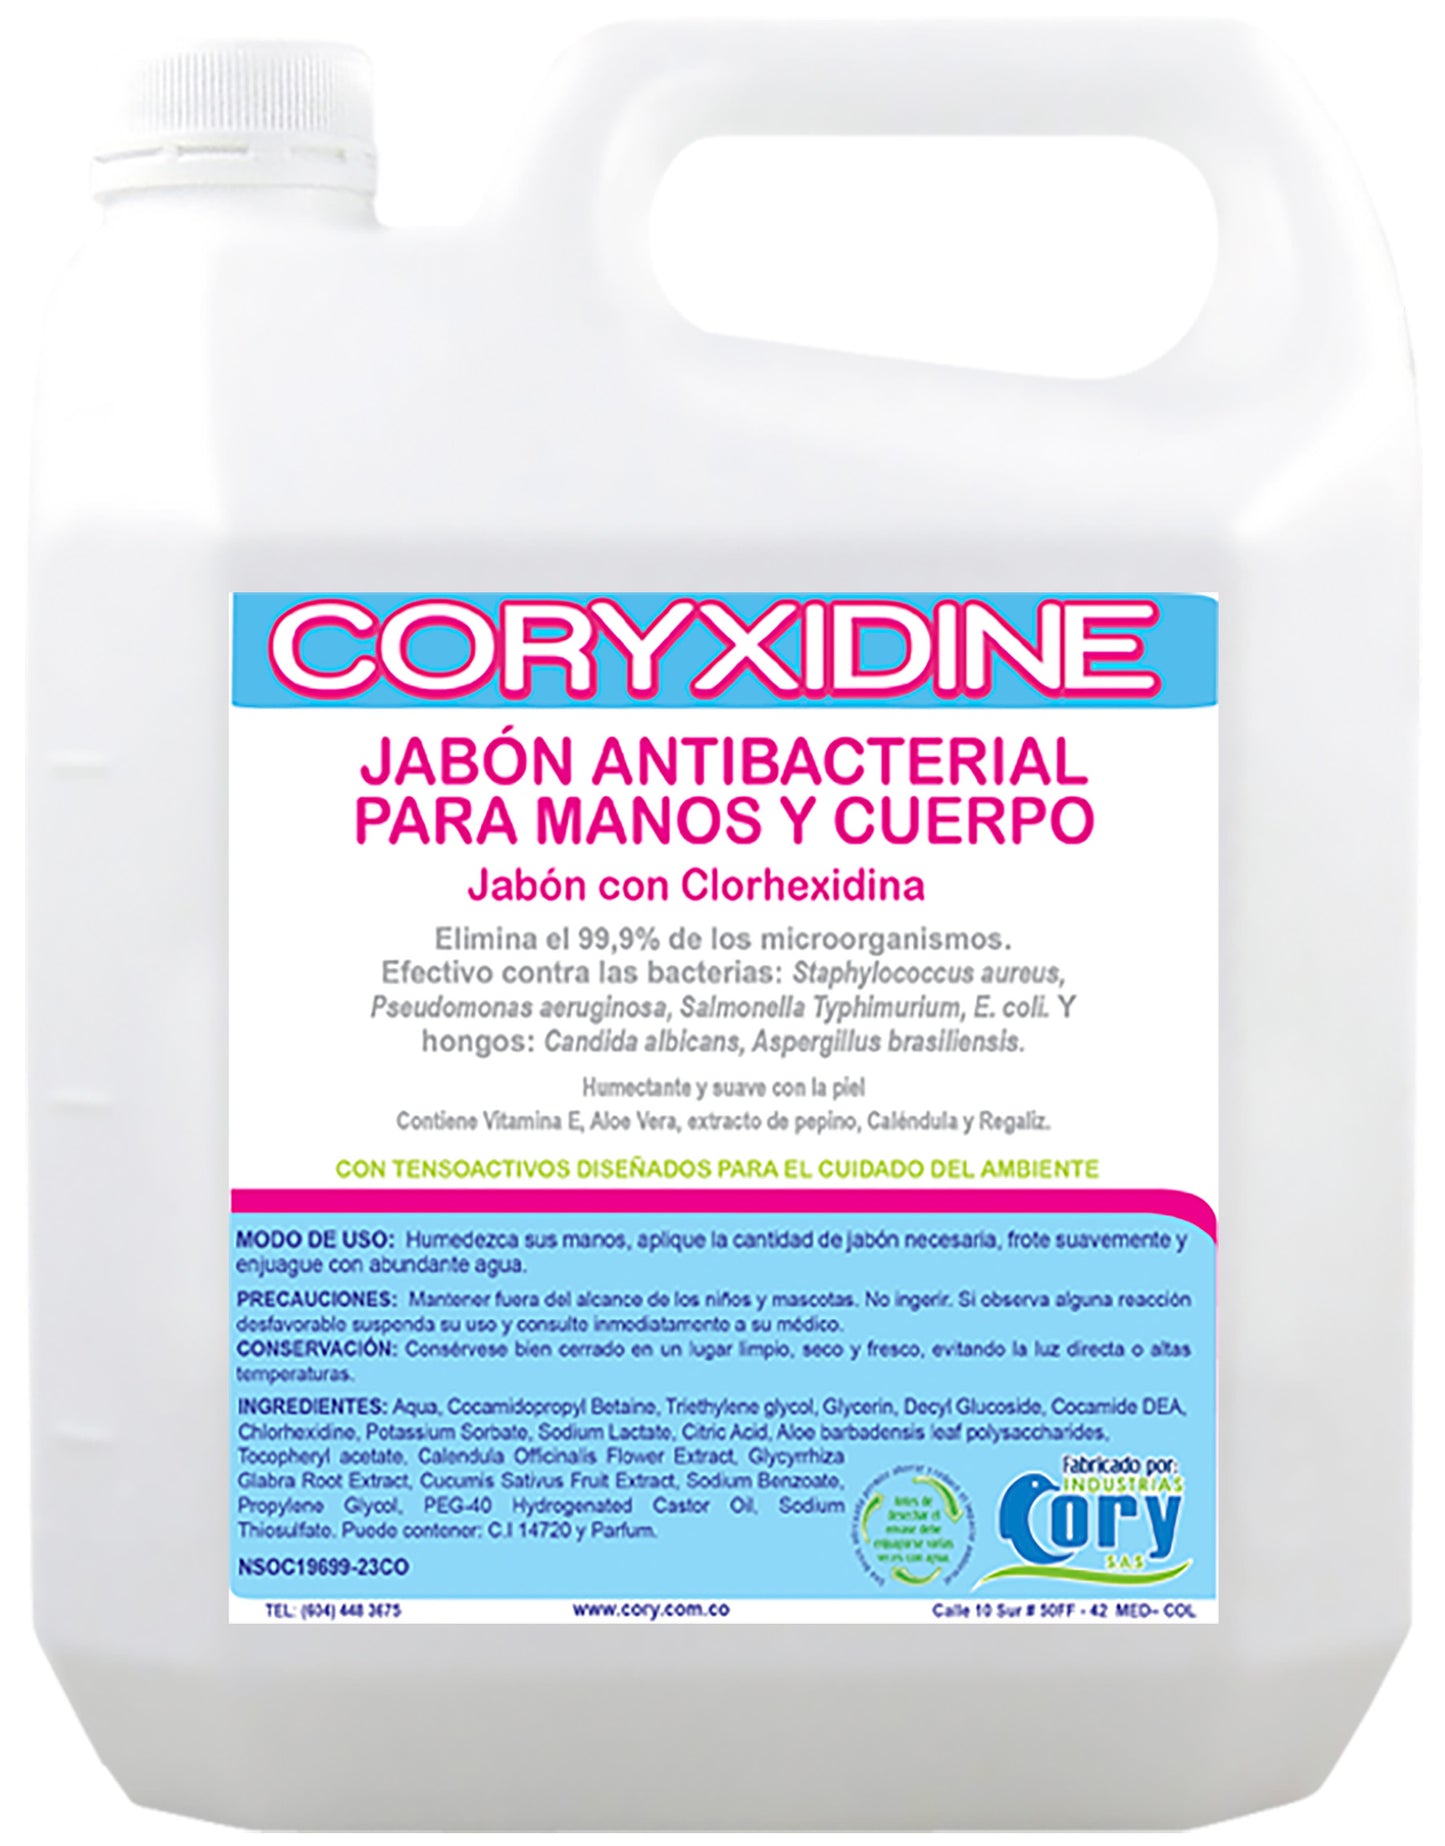 Jabón Antibacterial Coryxidine para Manos y Cuerpo